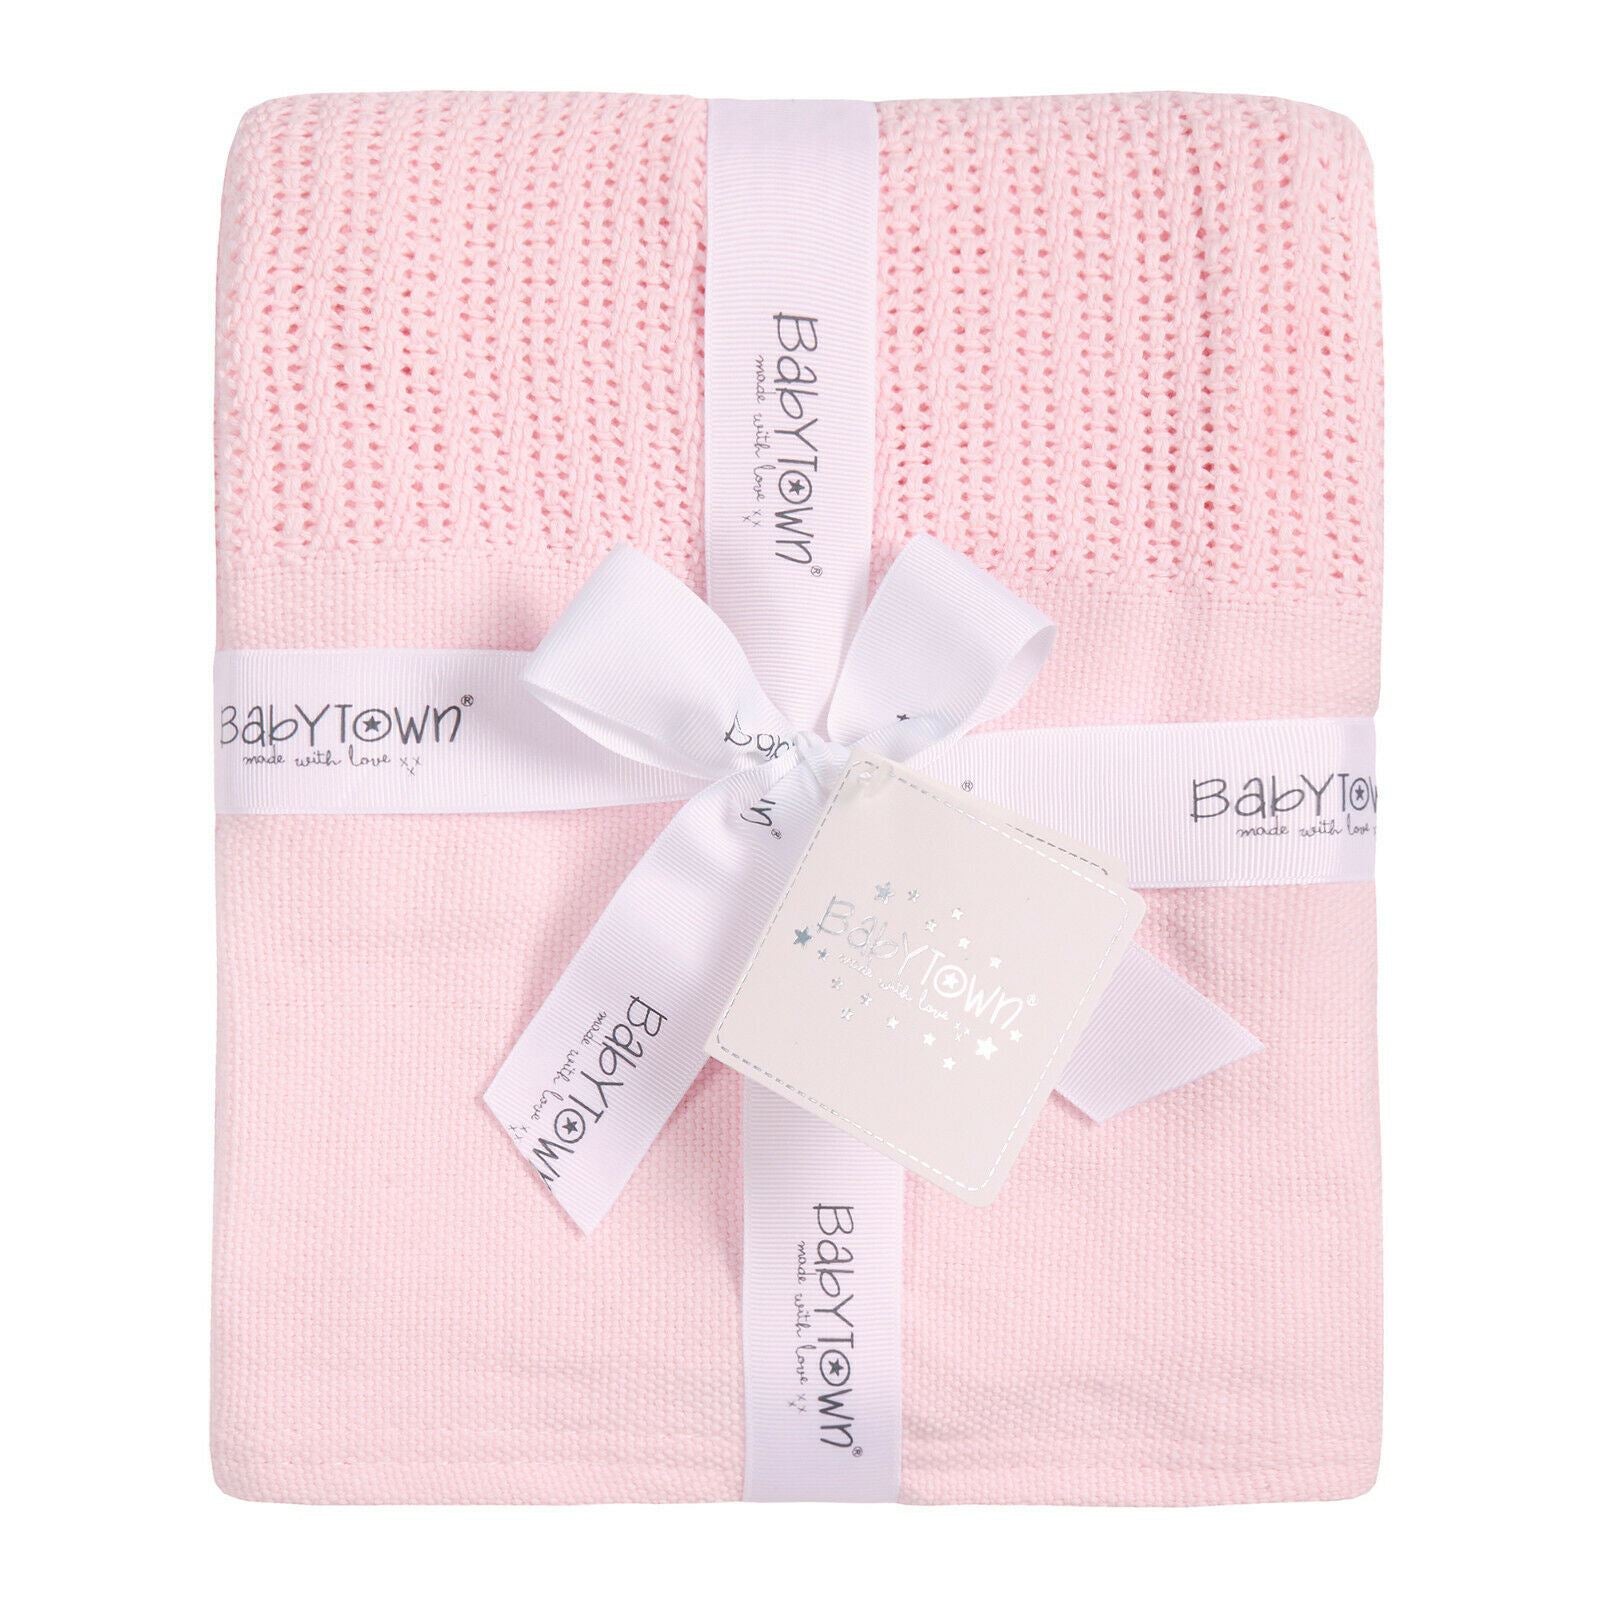 Pink Cellular Blanket